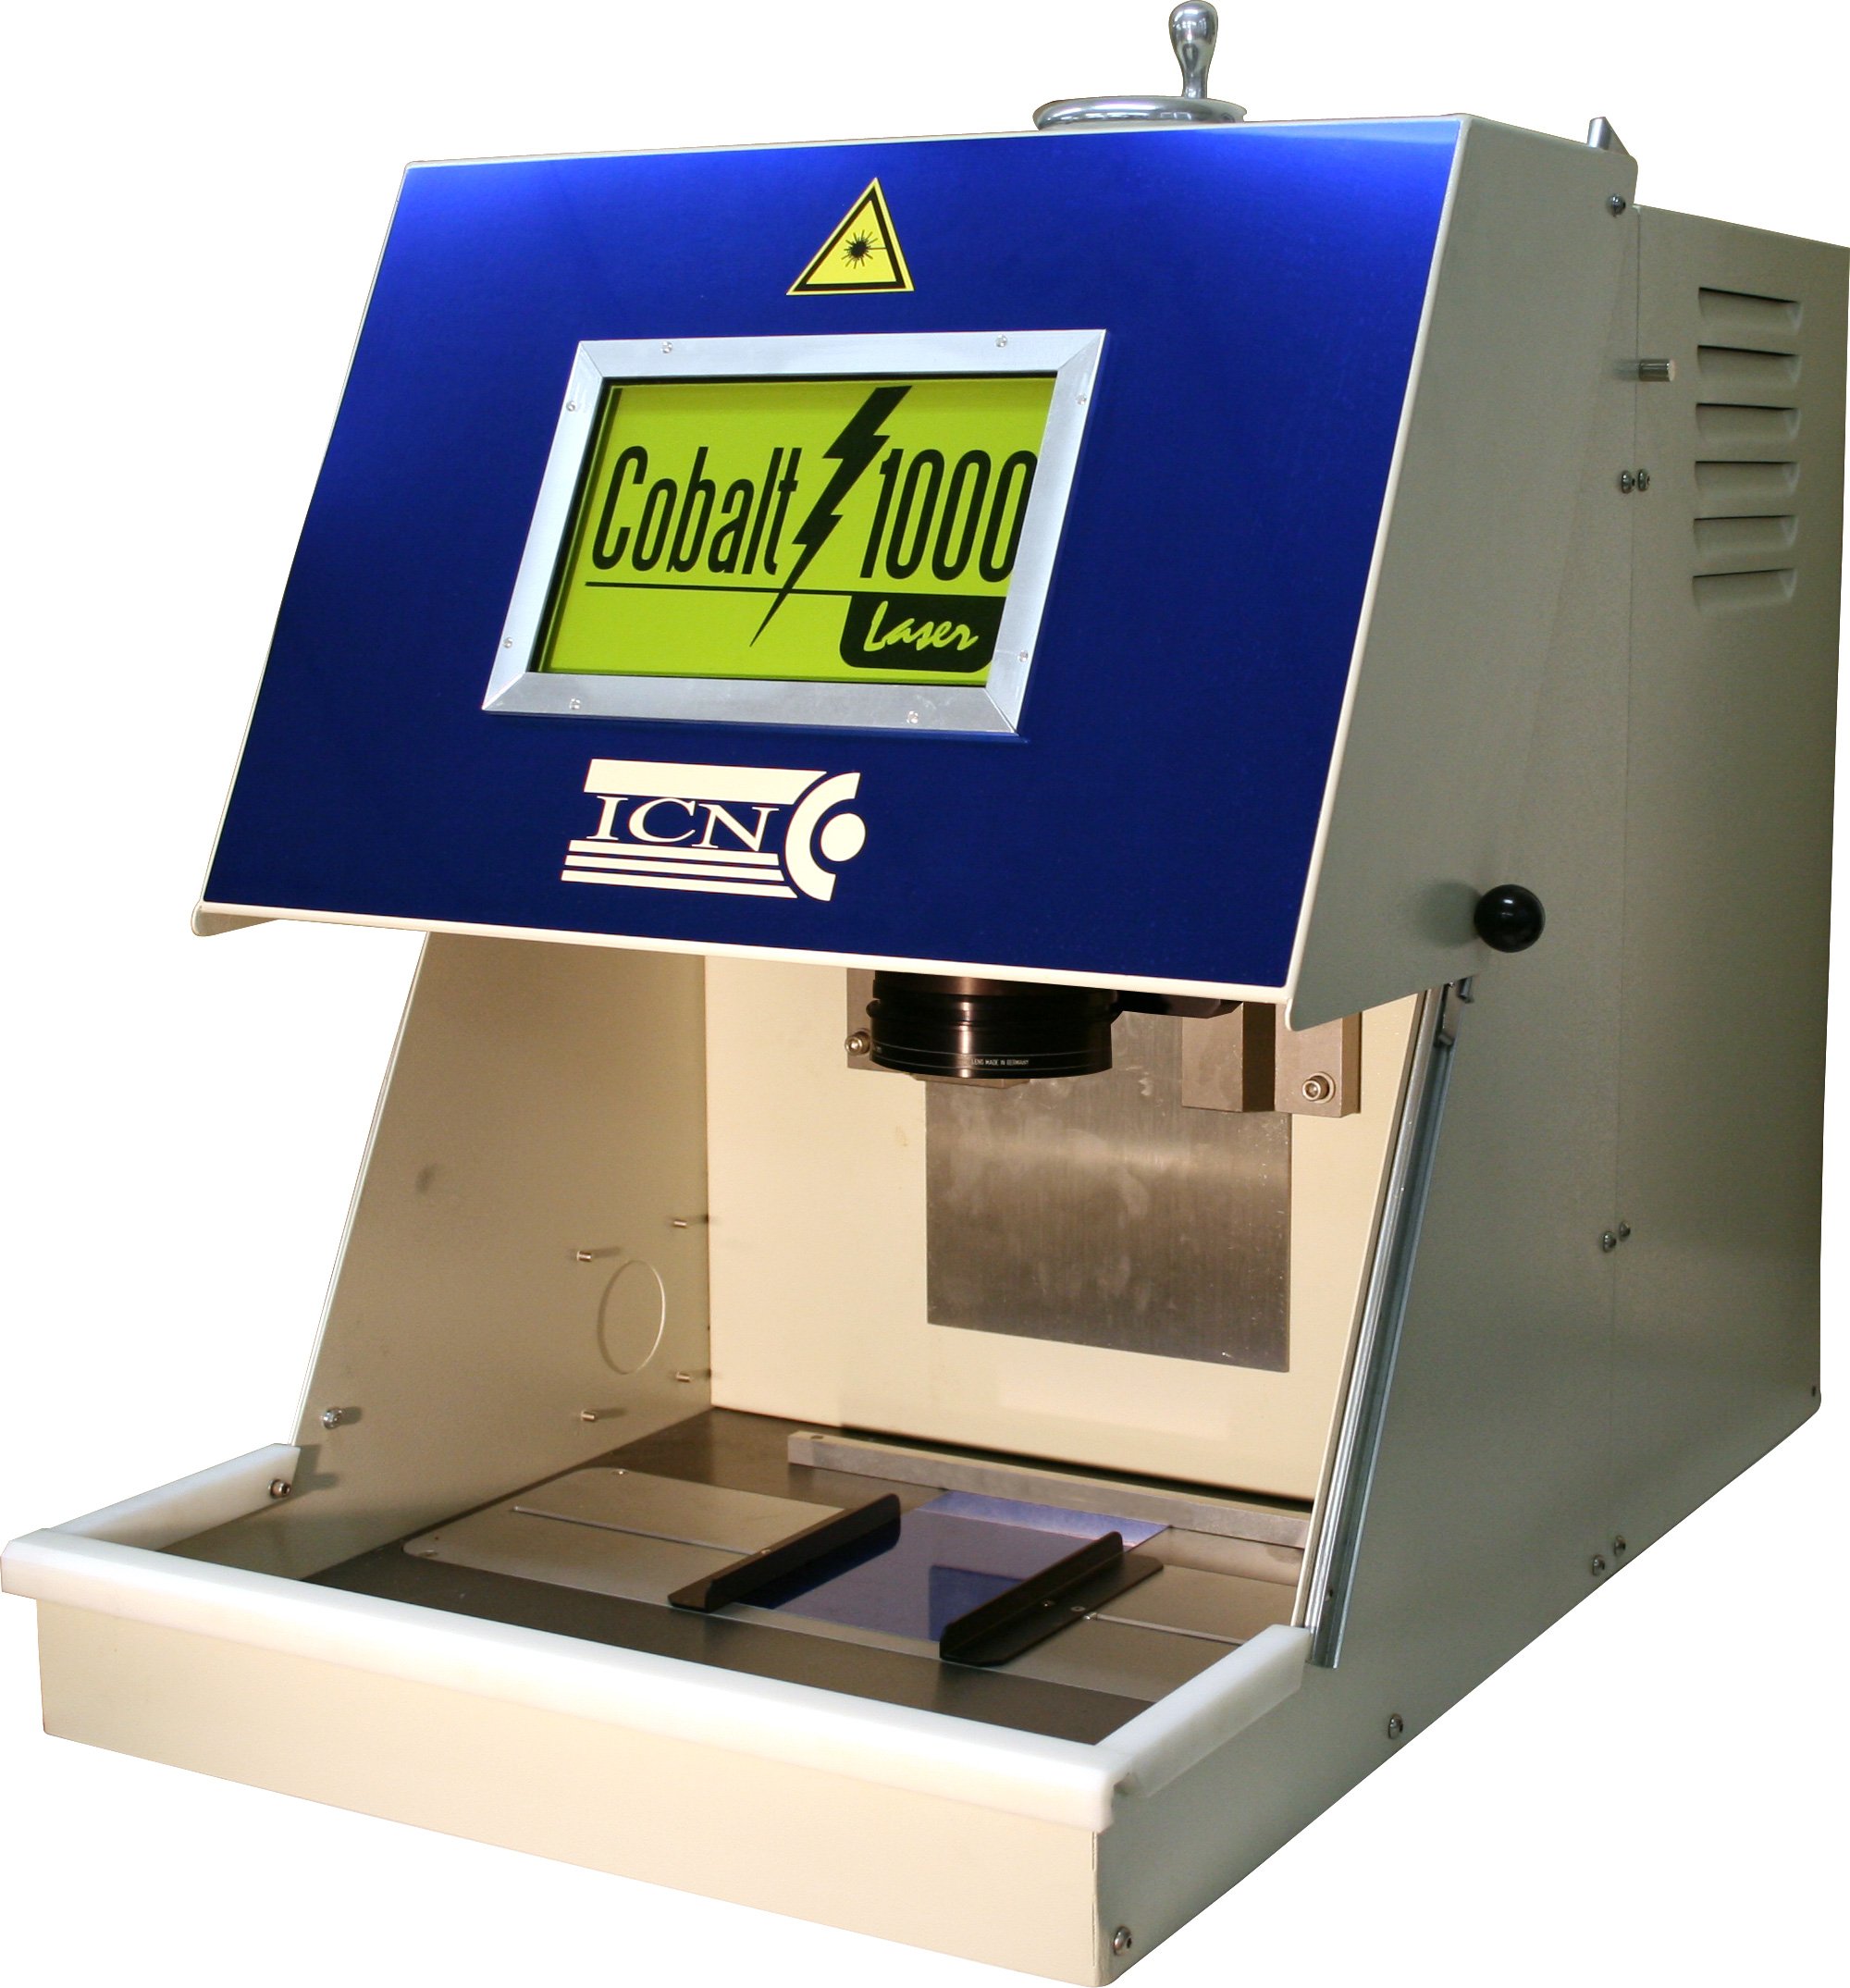 COBALT 1000 Laser Etching Machine - Fiber YAG Laser Engrave